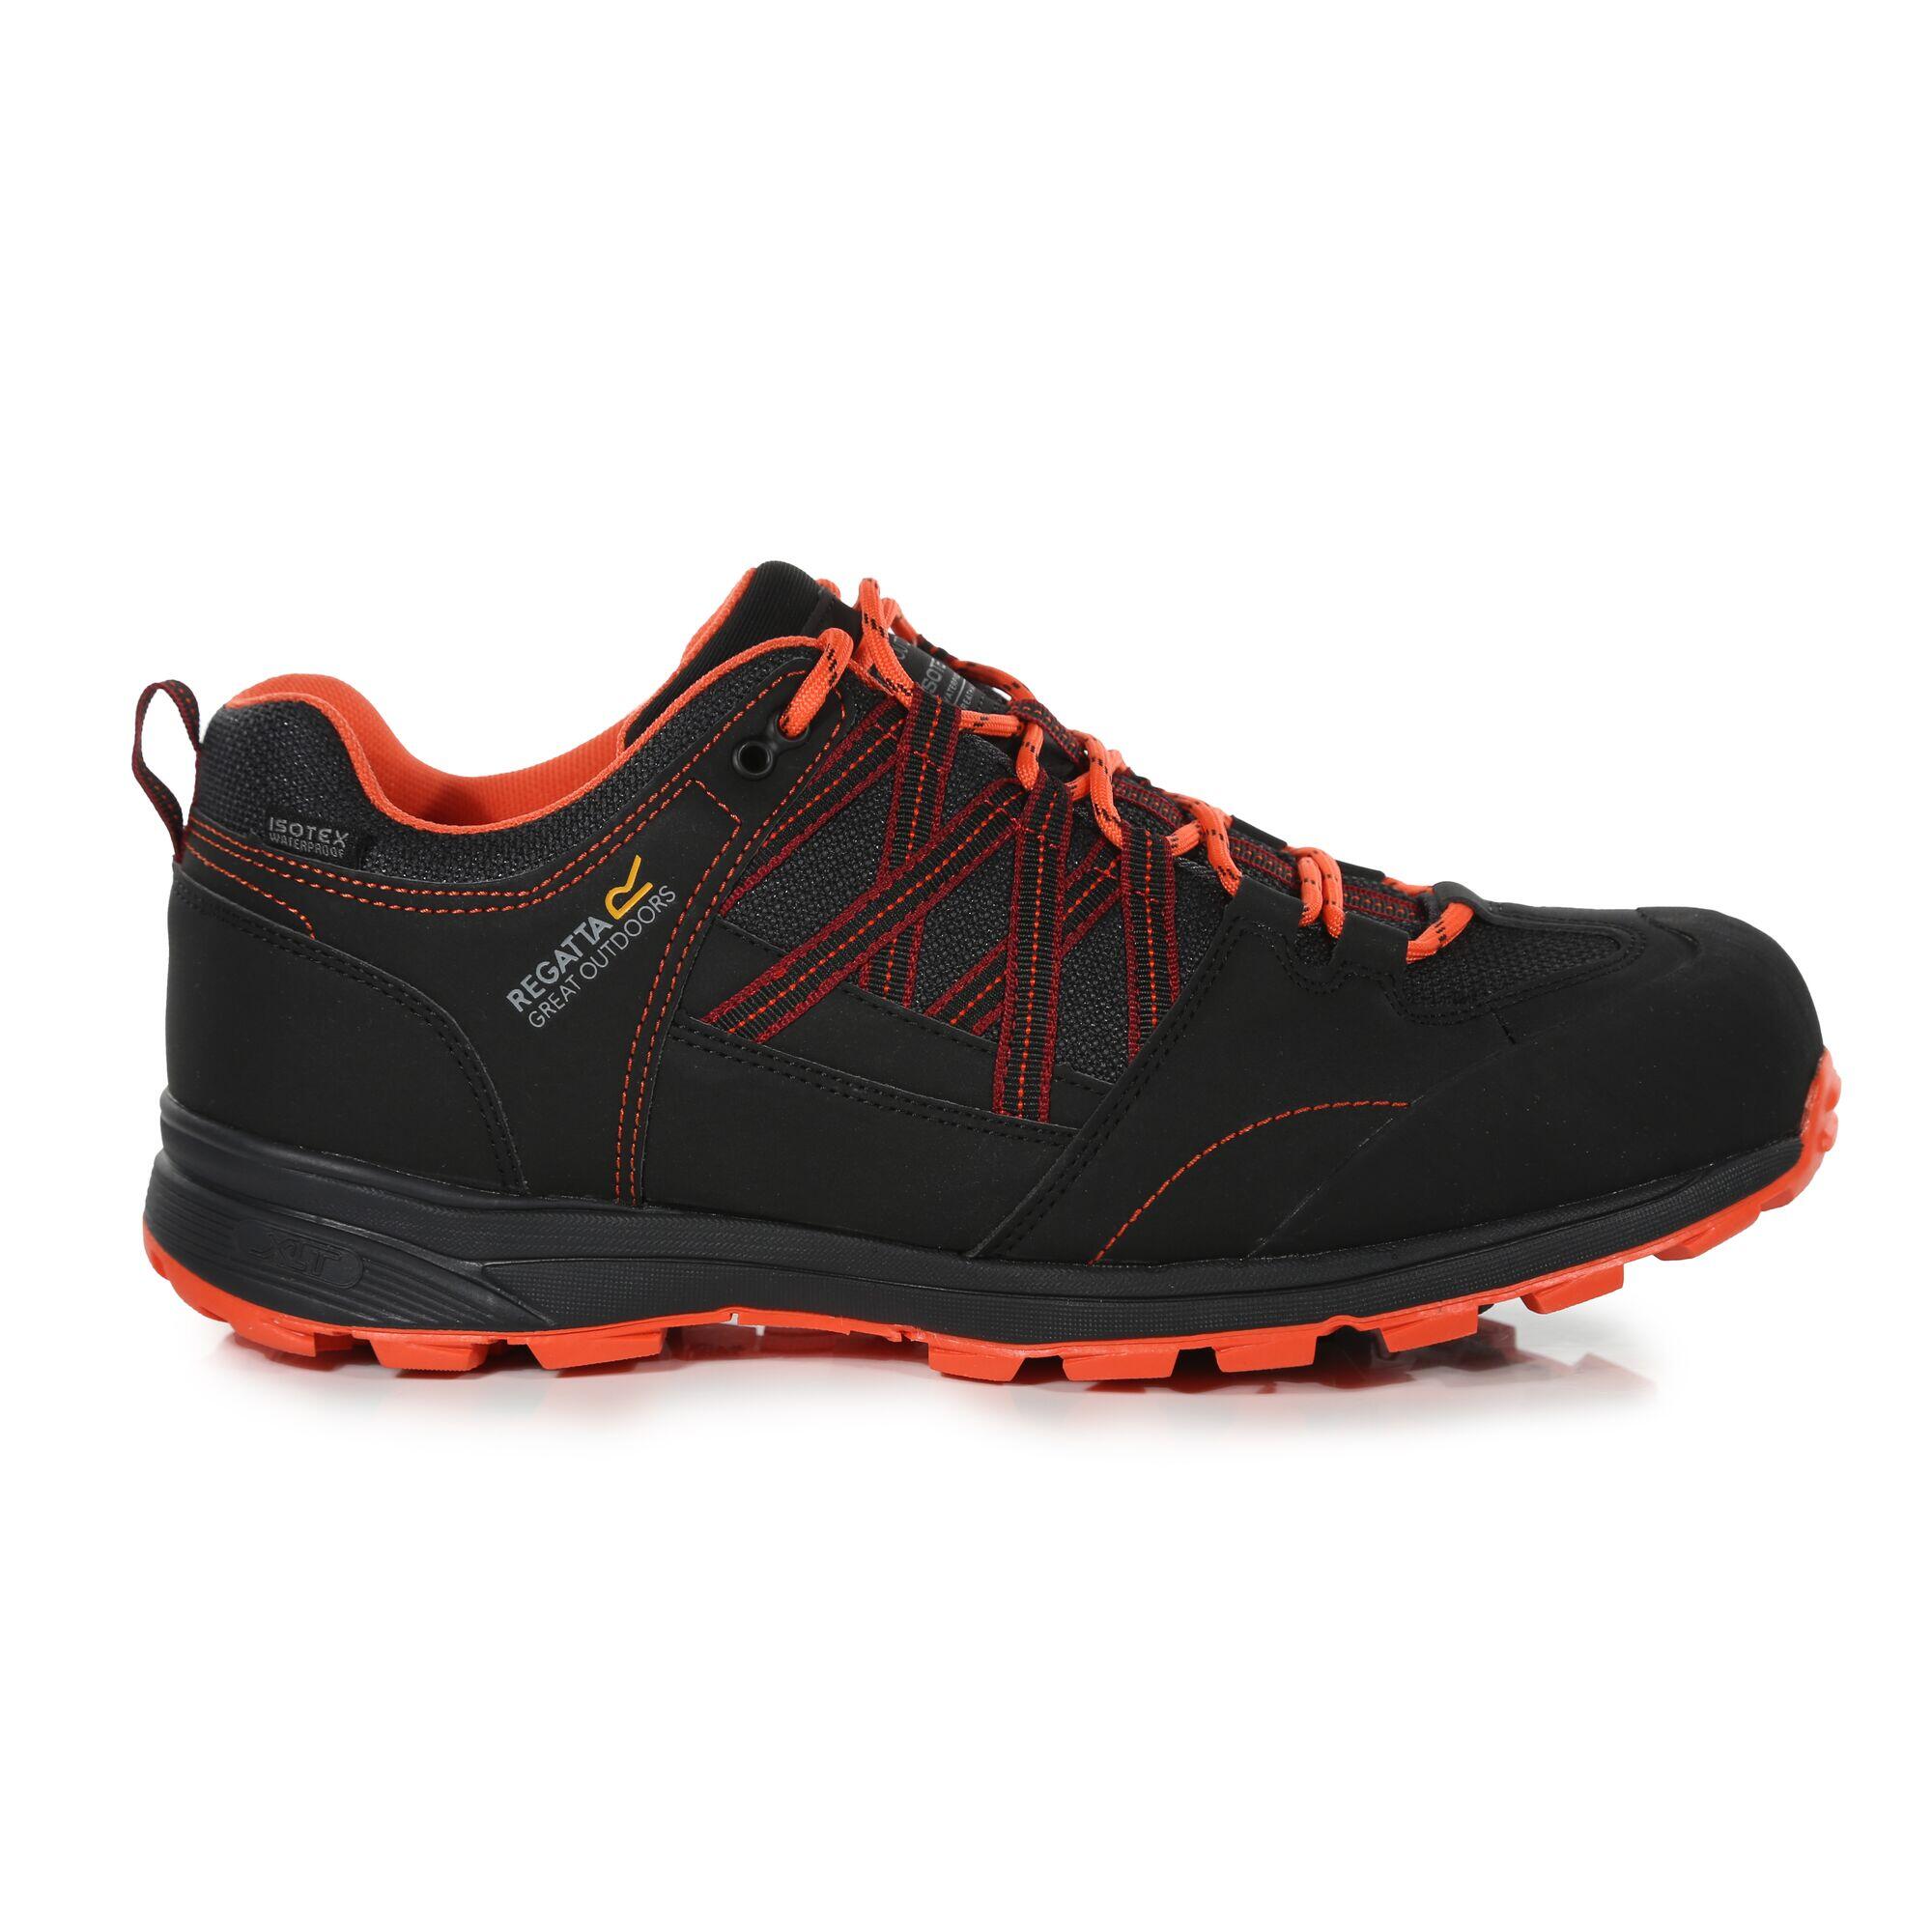 Samaris II Men's Hiking Shoes - Black/Red 1/6